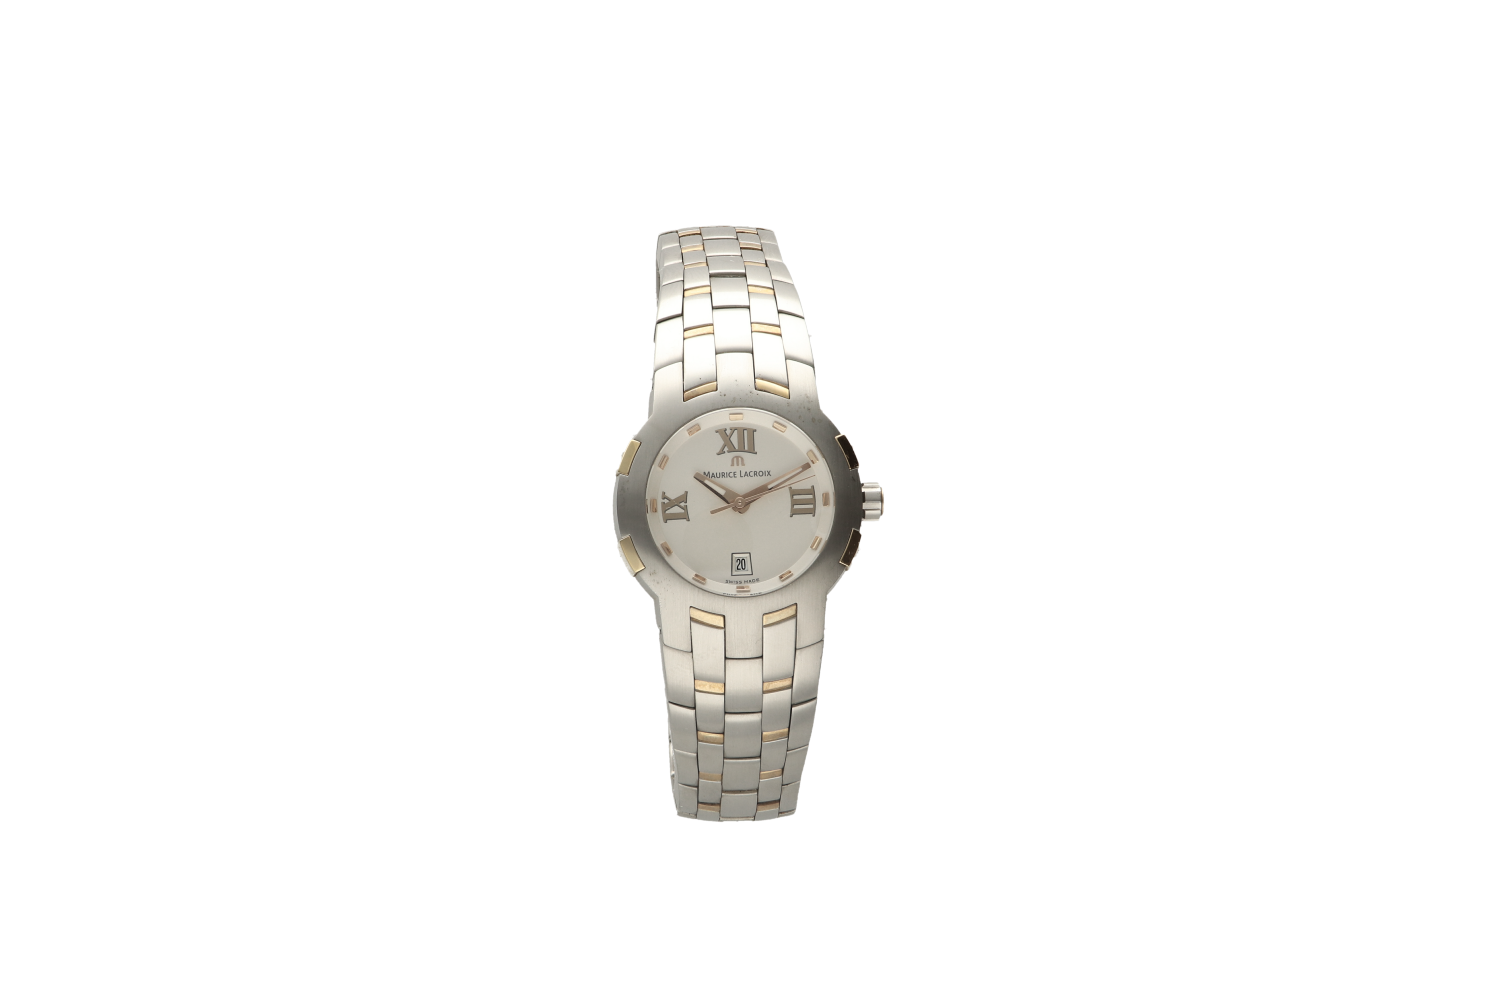 Ρολόι γυναικείο MAURICE LACROIX 79861 2903, με μπρασελέ από ατσάλι και χρυσό κ18